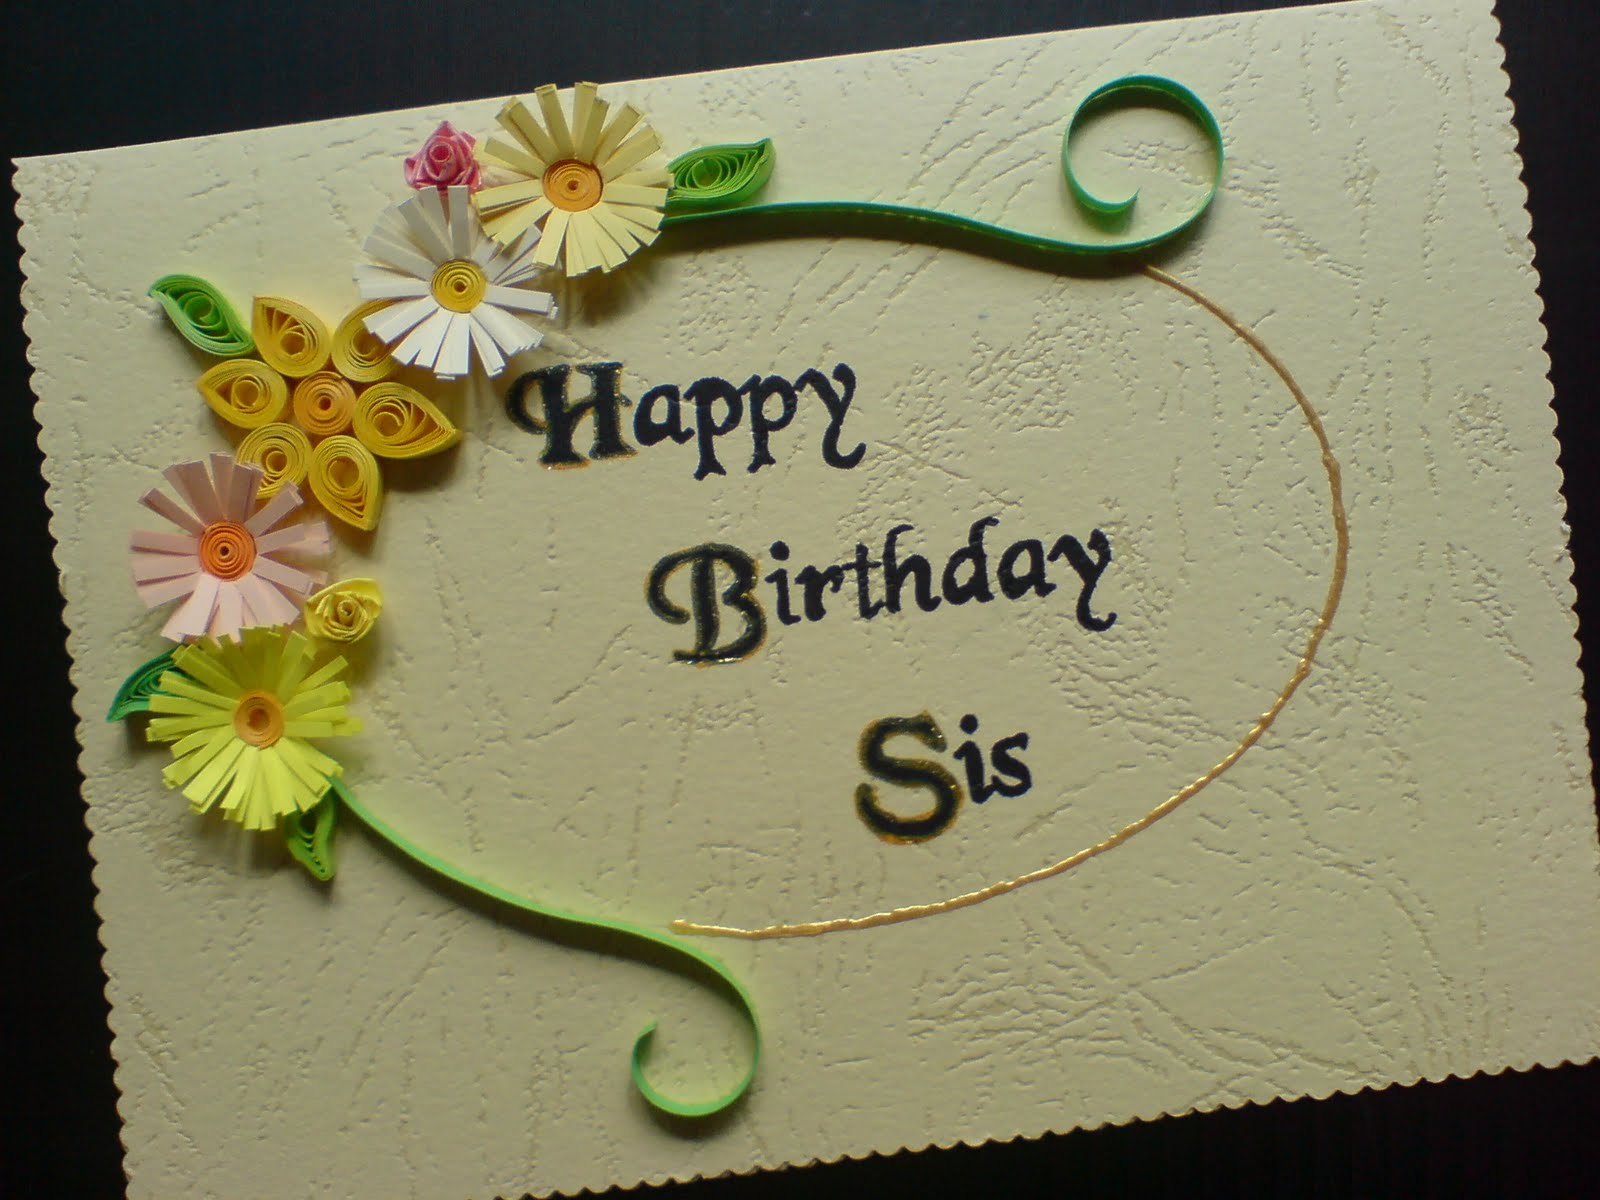 お誕生日おめでとう妹壁紙,テキスト,ケーキ飾る,ケーキ,誕生日ケーキ,トルテ